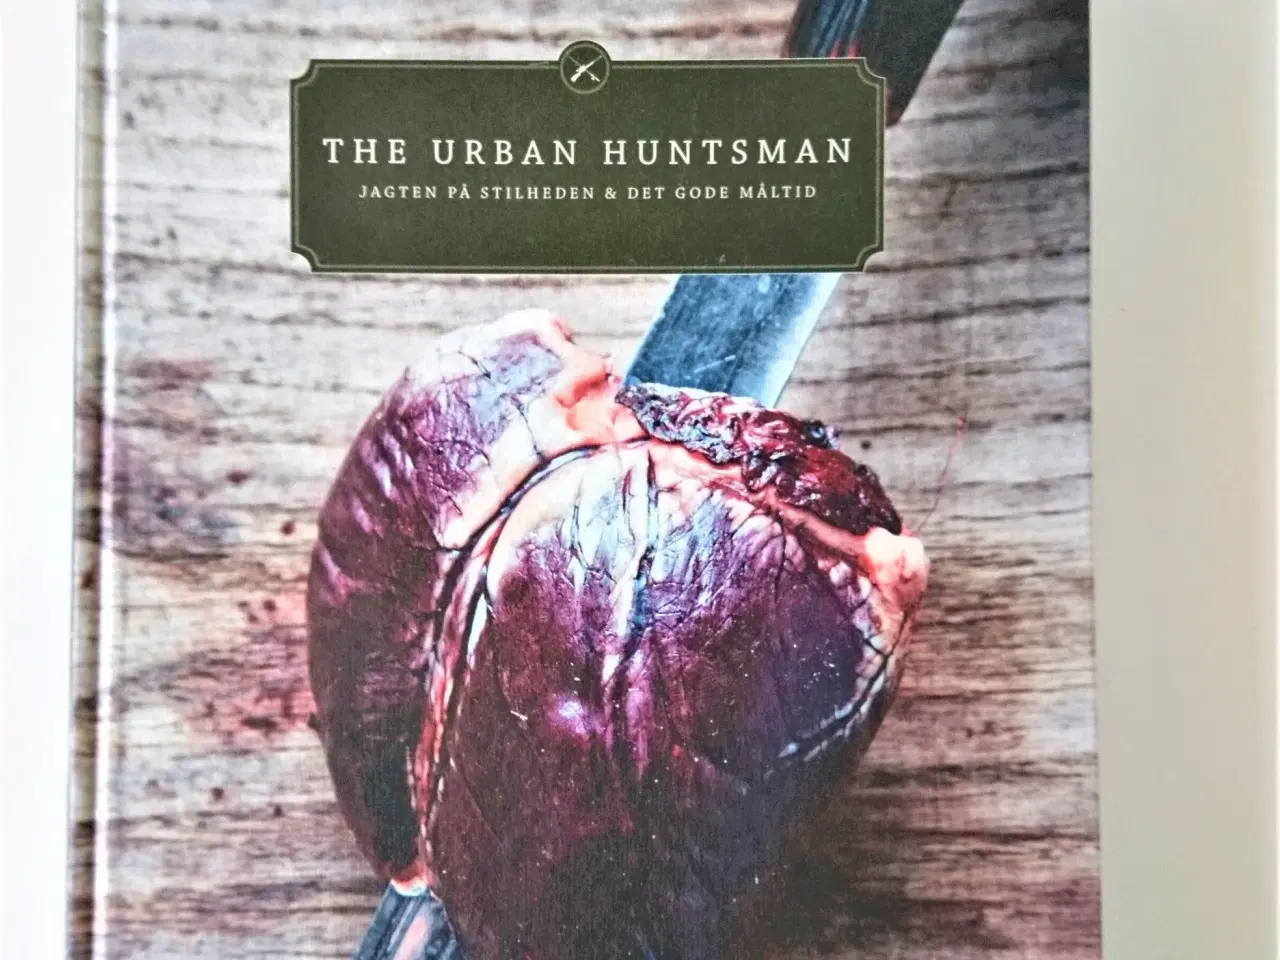 Billede 1 - The Urban Huntsman. Af Danny Christensen